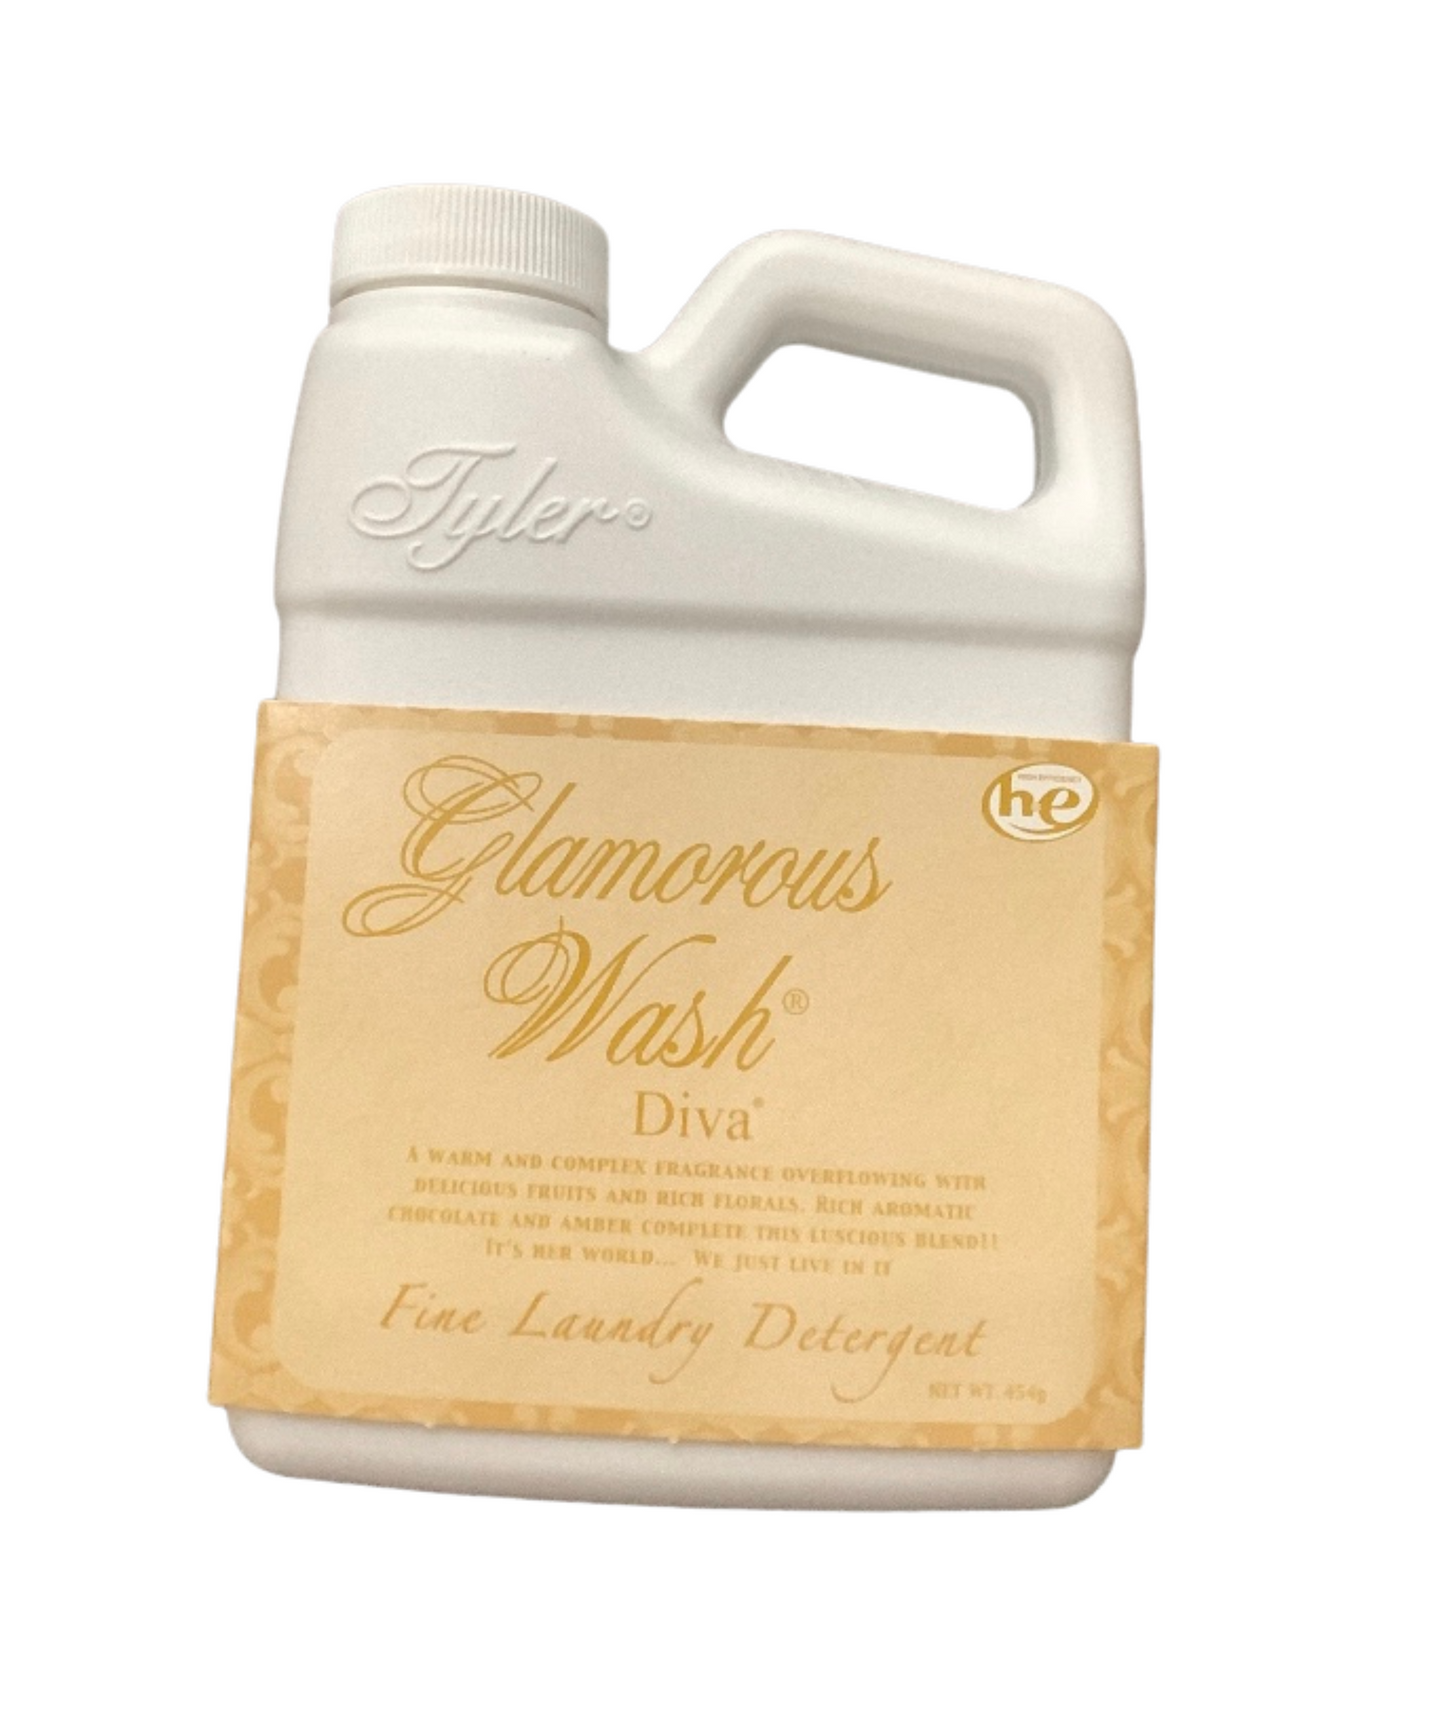 Glamorous Wash 454g Diva